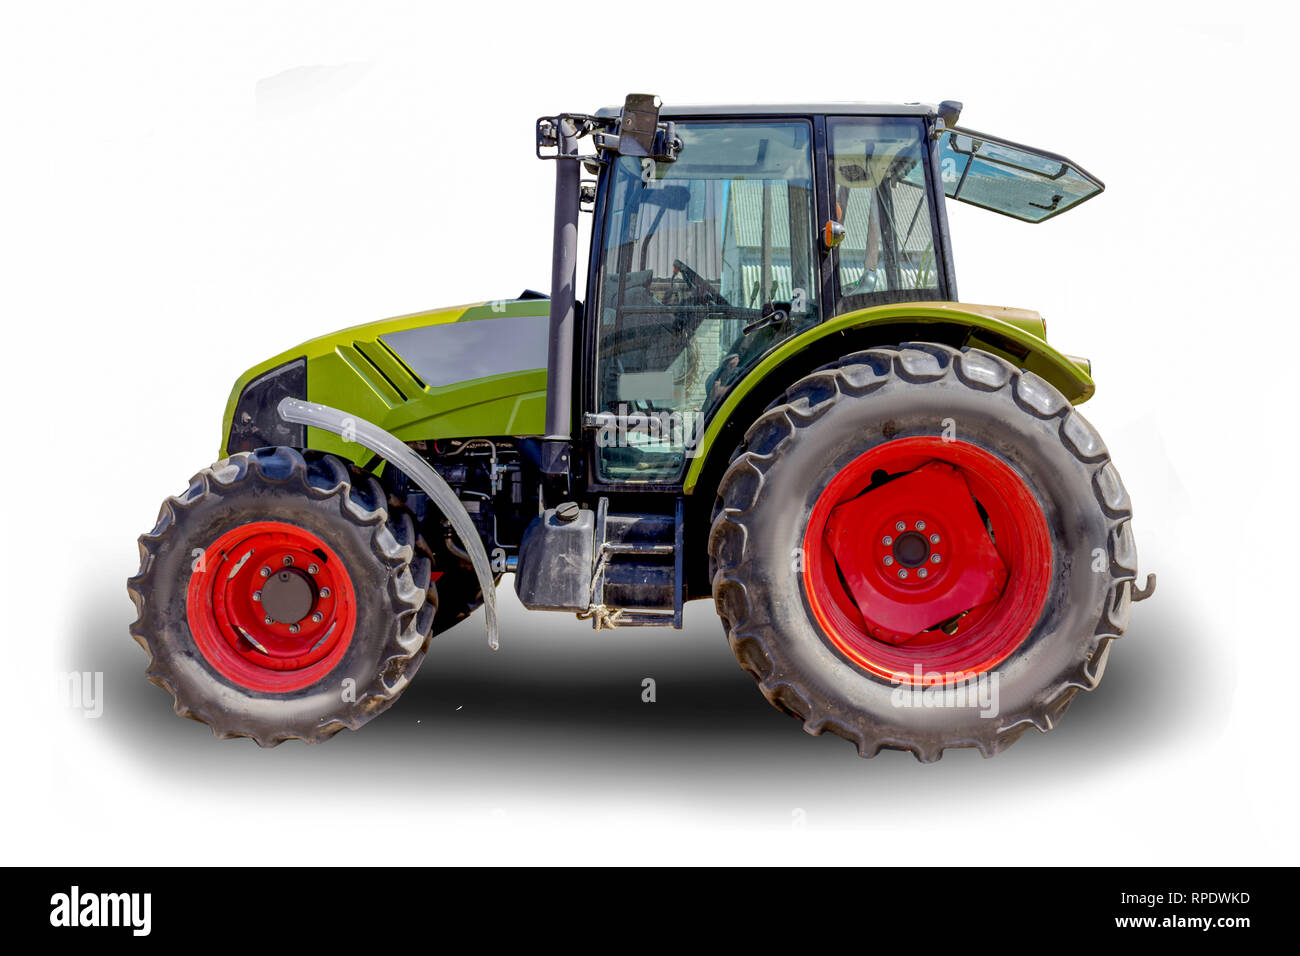 Leistungsstarke Traktor für verschiedene landwirtschaftliche Arbeiten. Fotos von der Seite einer landwirtschaftlichen Maschine. Notwendige Ausrüstung für eine Molkerei. Isolierte Bild. Stockfoto